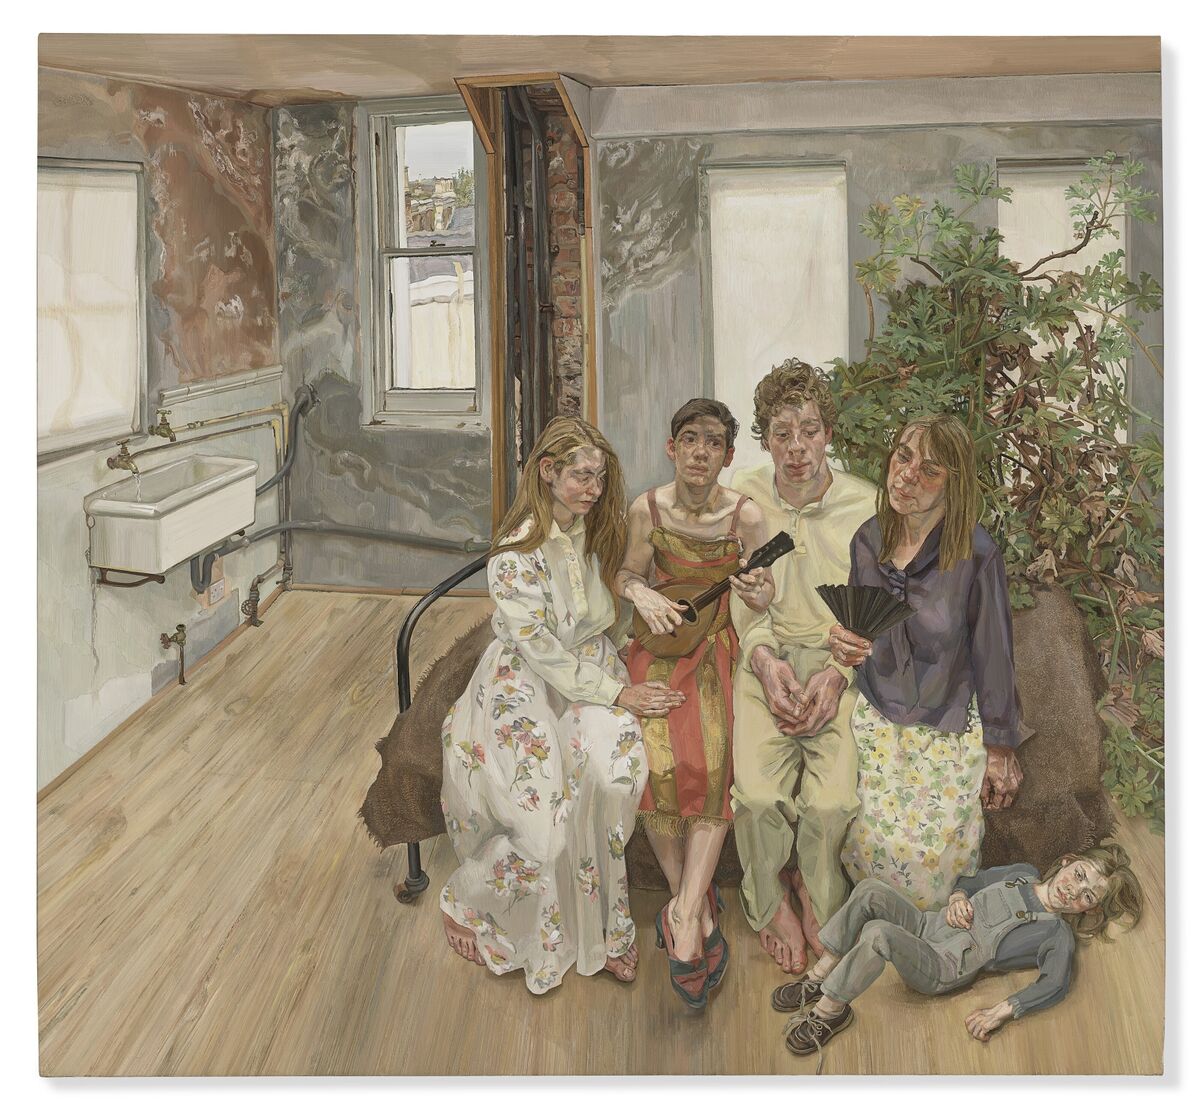 Paul Allen Auction Results: Lucien Freud Painting Sets $86 Million 